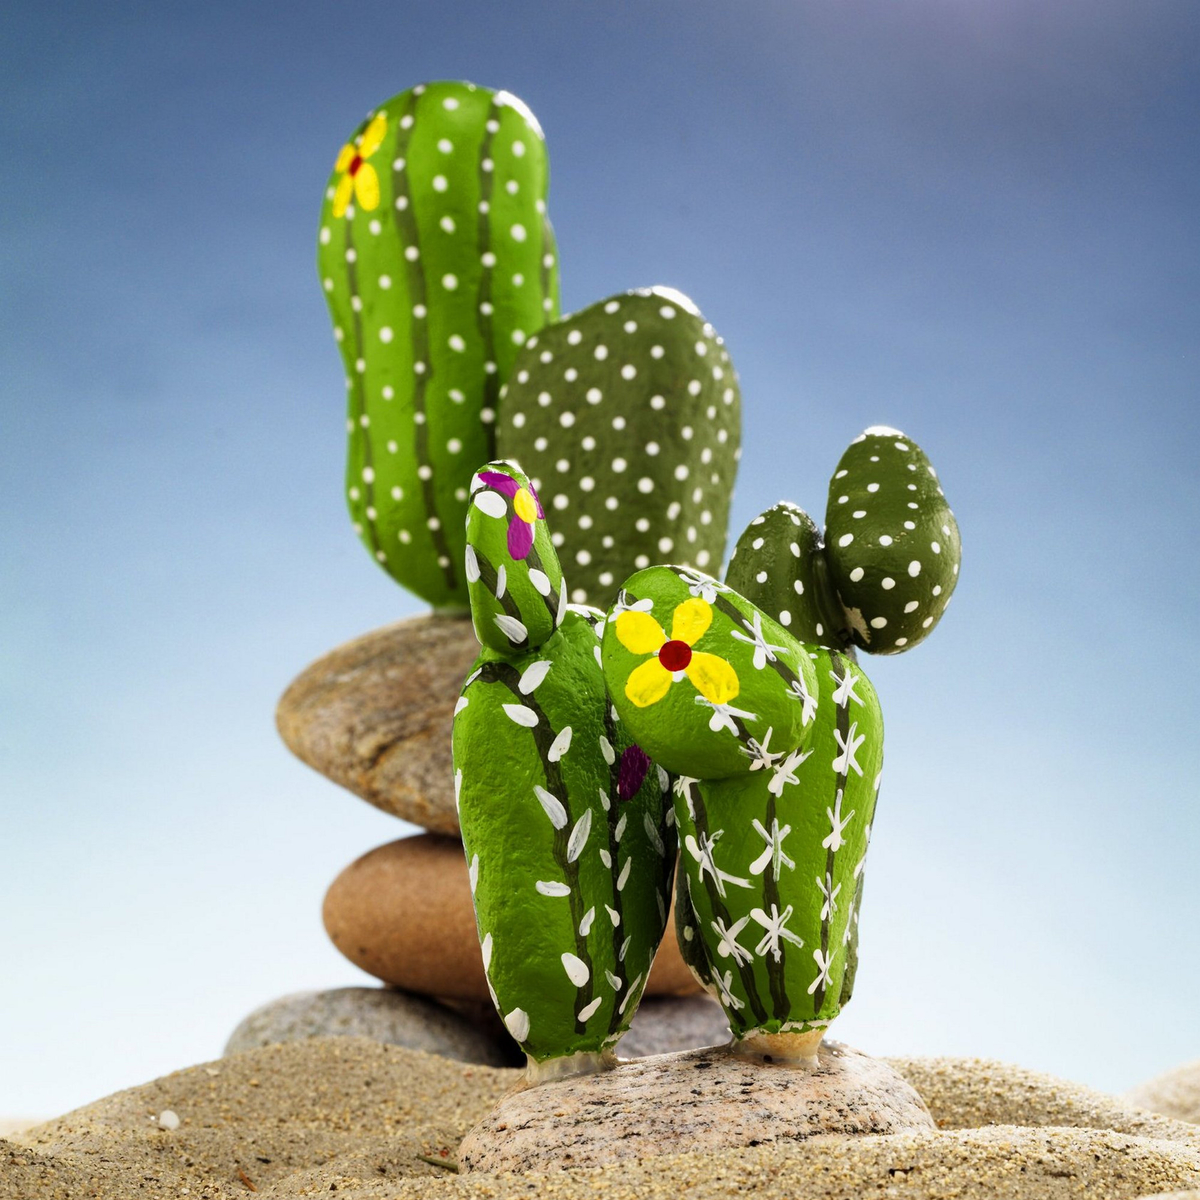 Förvandla stenen till en kaktus